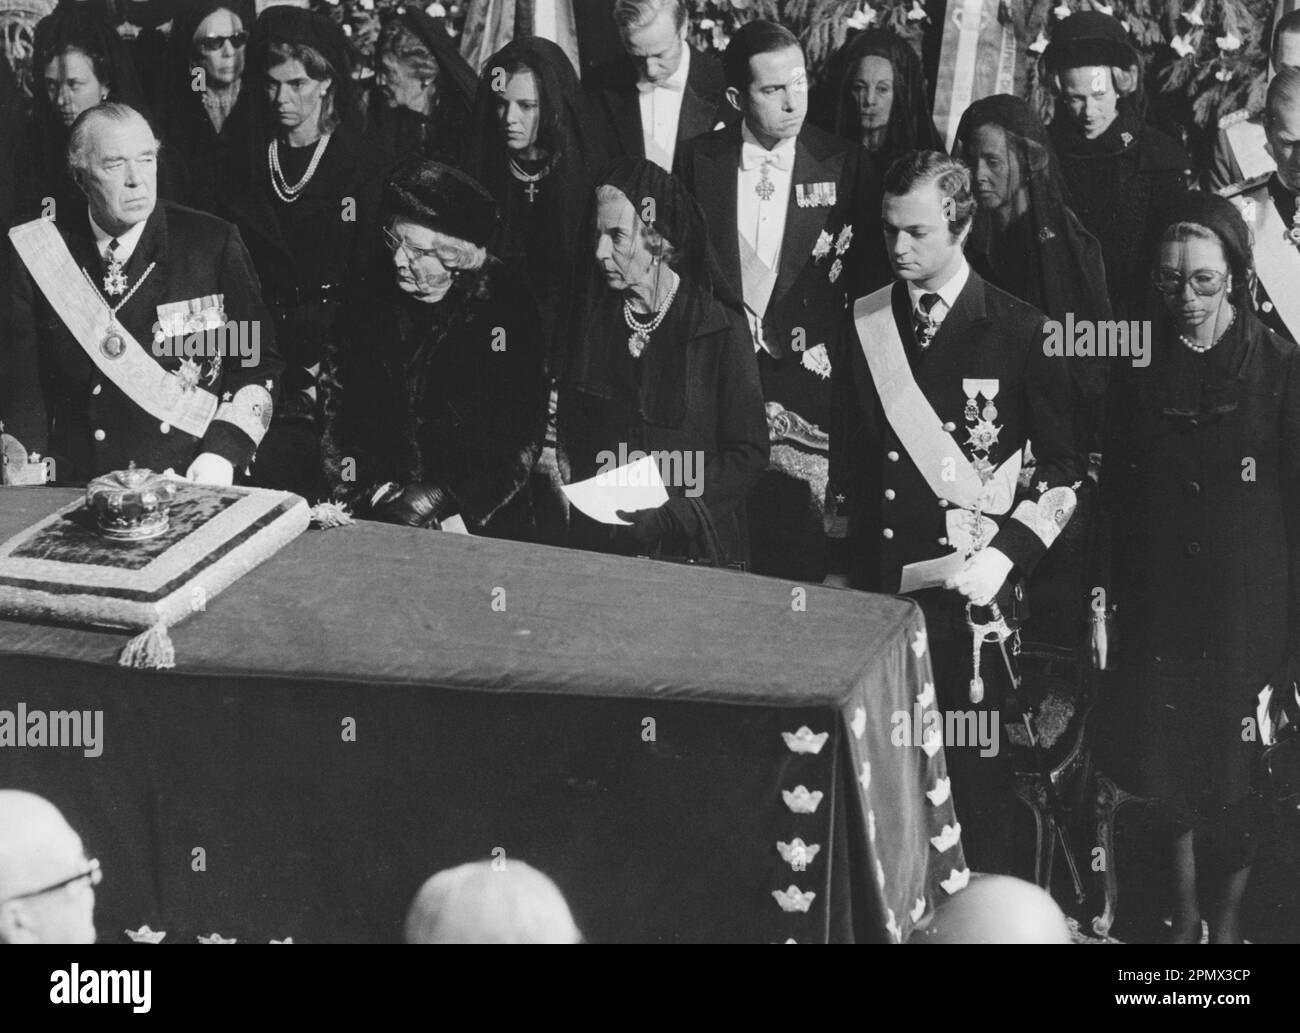 Carl XVI Gustaf, roi de Suède. Né le 30 avril 1946. Photo le 25 septembre 1973 aux funérailles de son grand-père, le roi Gustaf VI Adolf. Assister aux funérailles également Reine Ingrid du Danemark, princesse Christina de Suède, prince Philip, duc d'Édimbourg. Banque D'Images